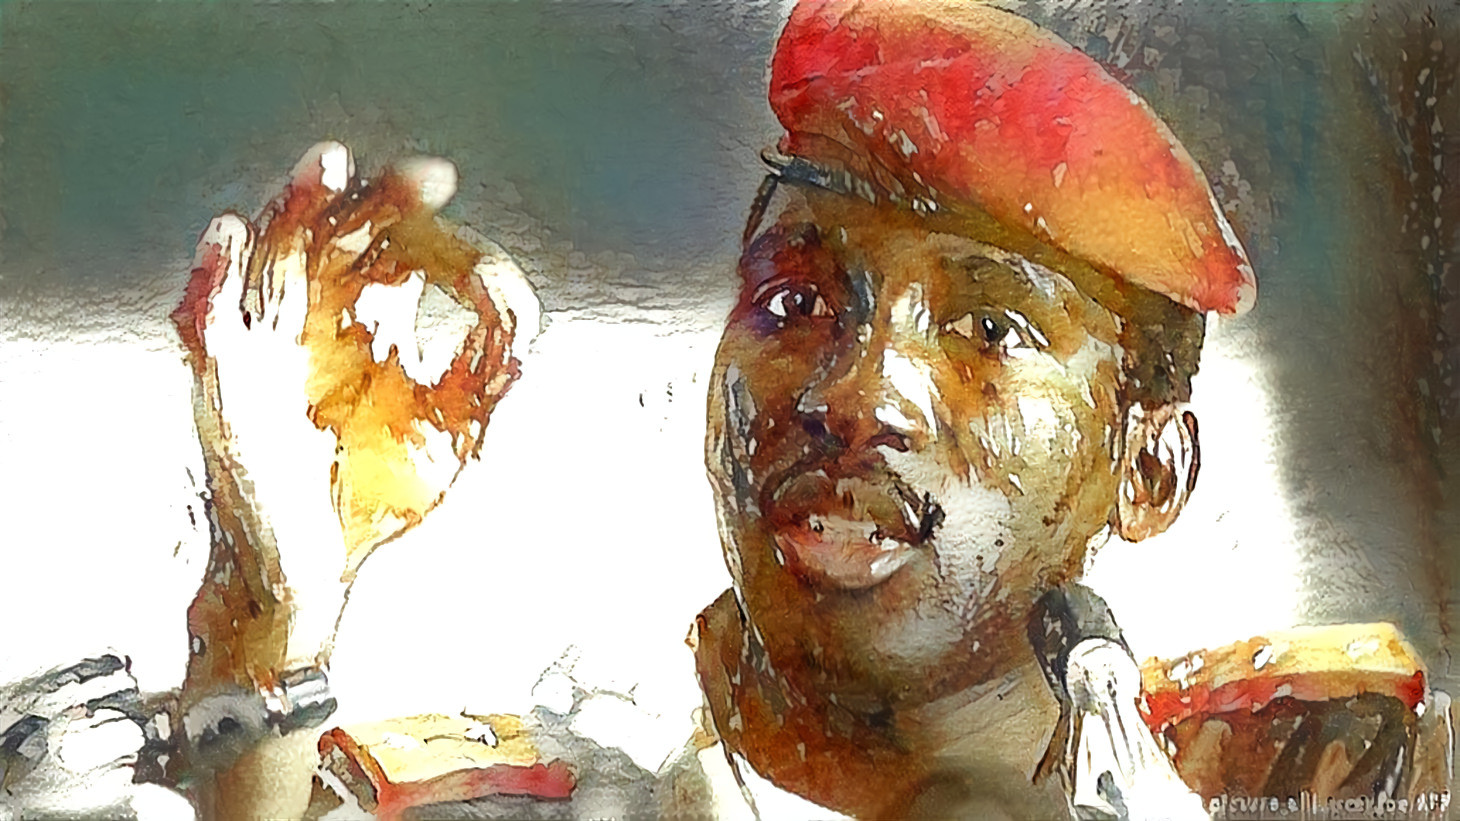 Sankara